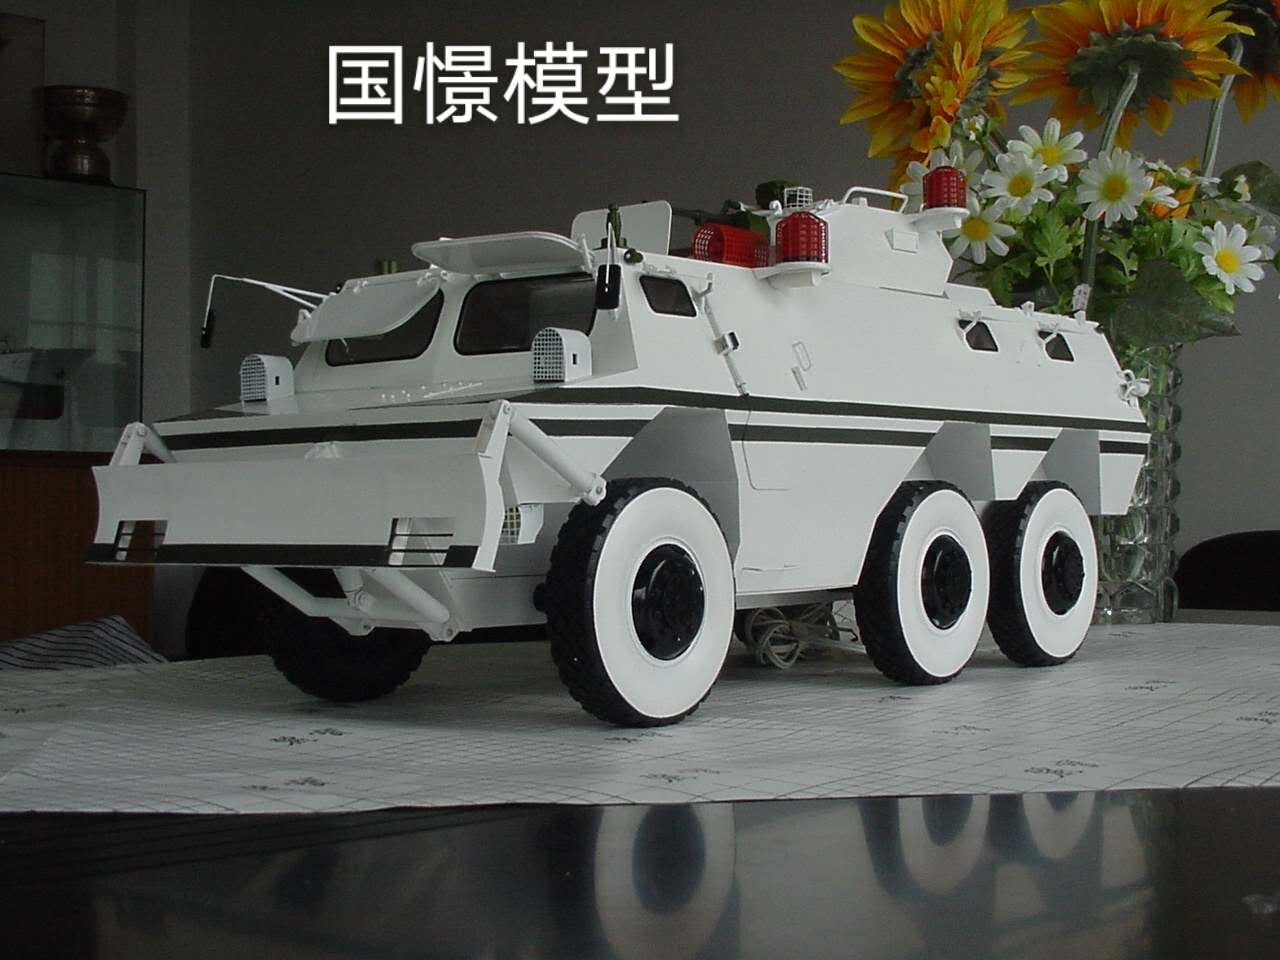 藤县军事模型